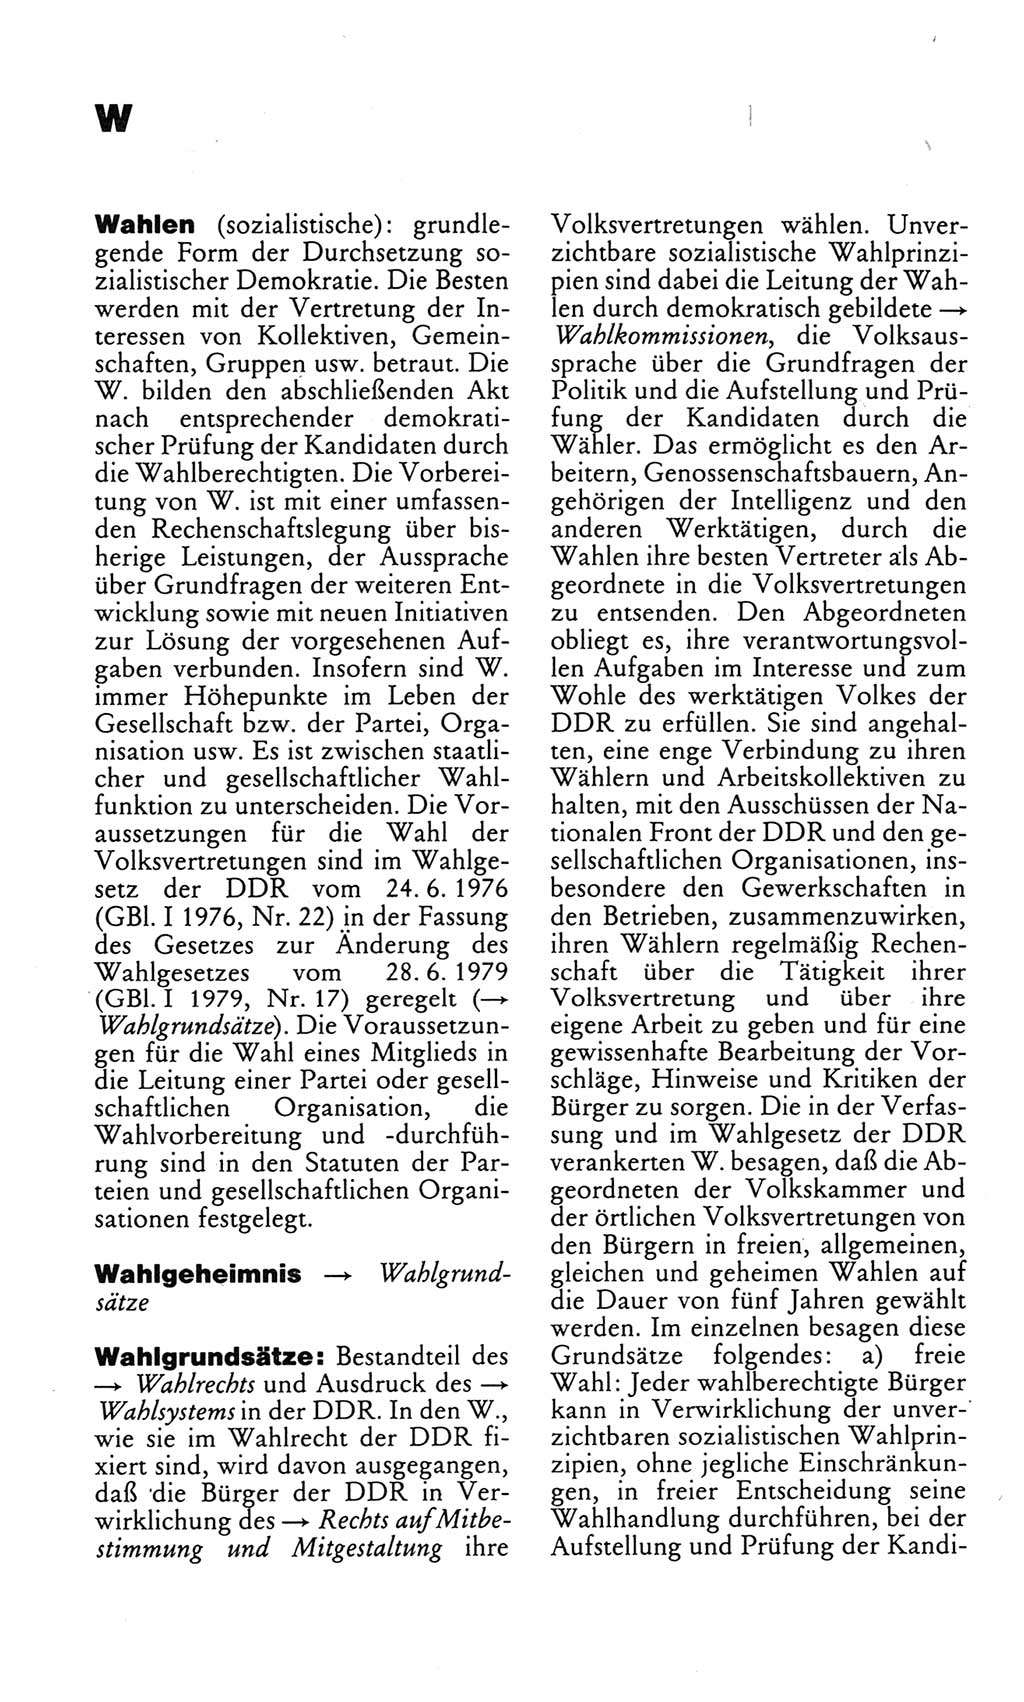 Kleines politisches Wörterbuch [Deutsche Demokratische Republik (DDR)] 1983, Seite 1034 (Kl. pol. Wb. DDR 1983, S. 1034)